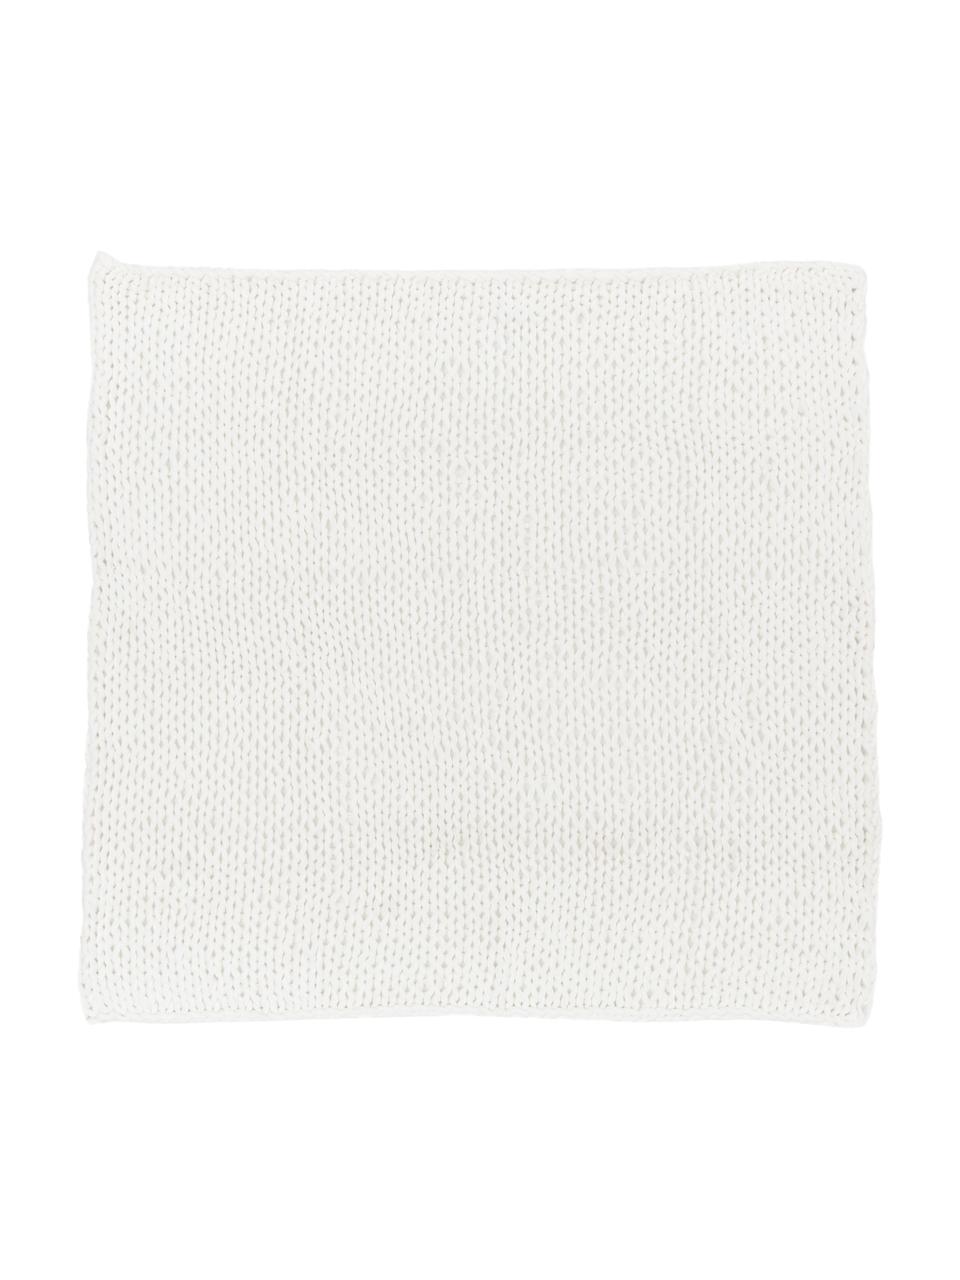 Manta de punto grueso Adyna, 100% acrílico, Blanco, 150 x 200 cm